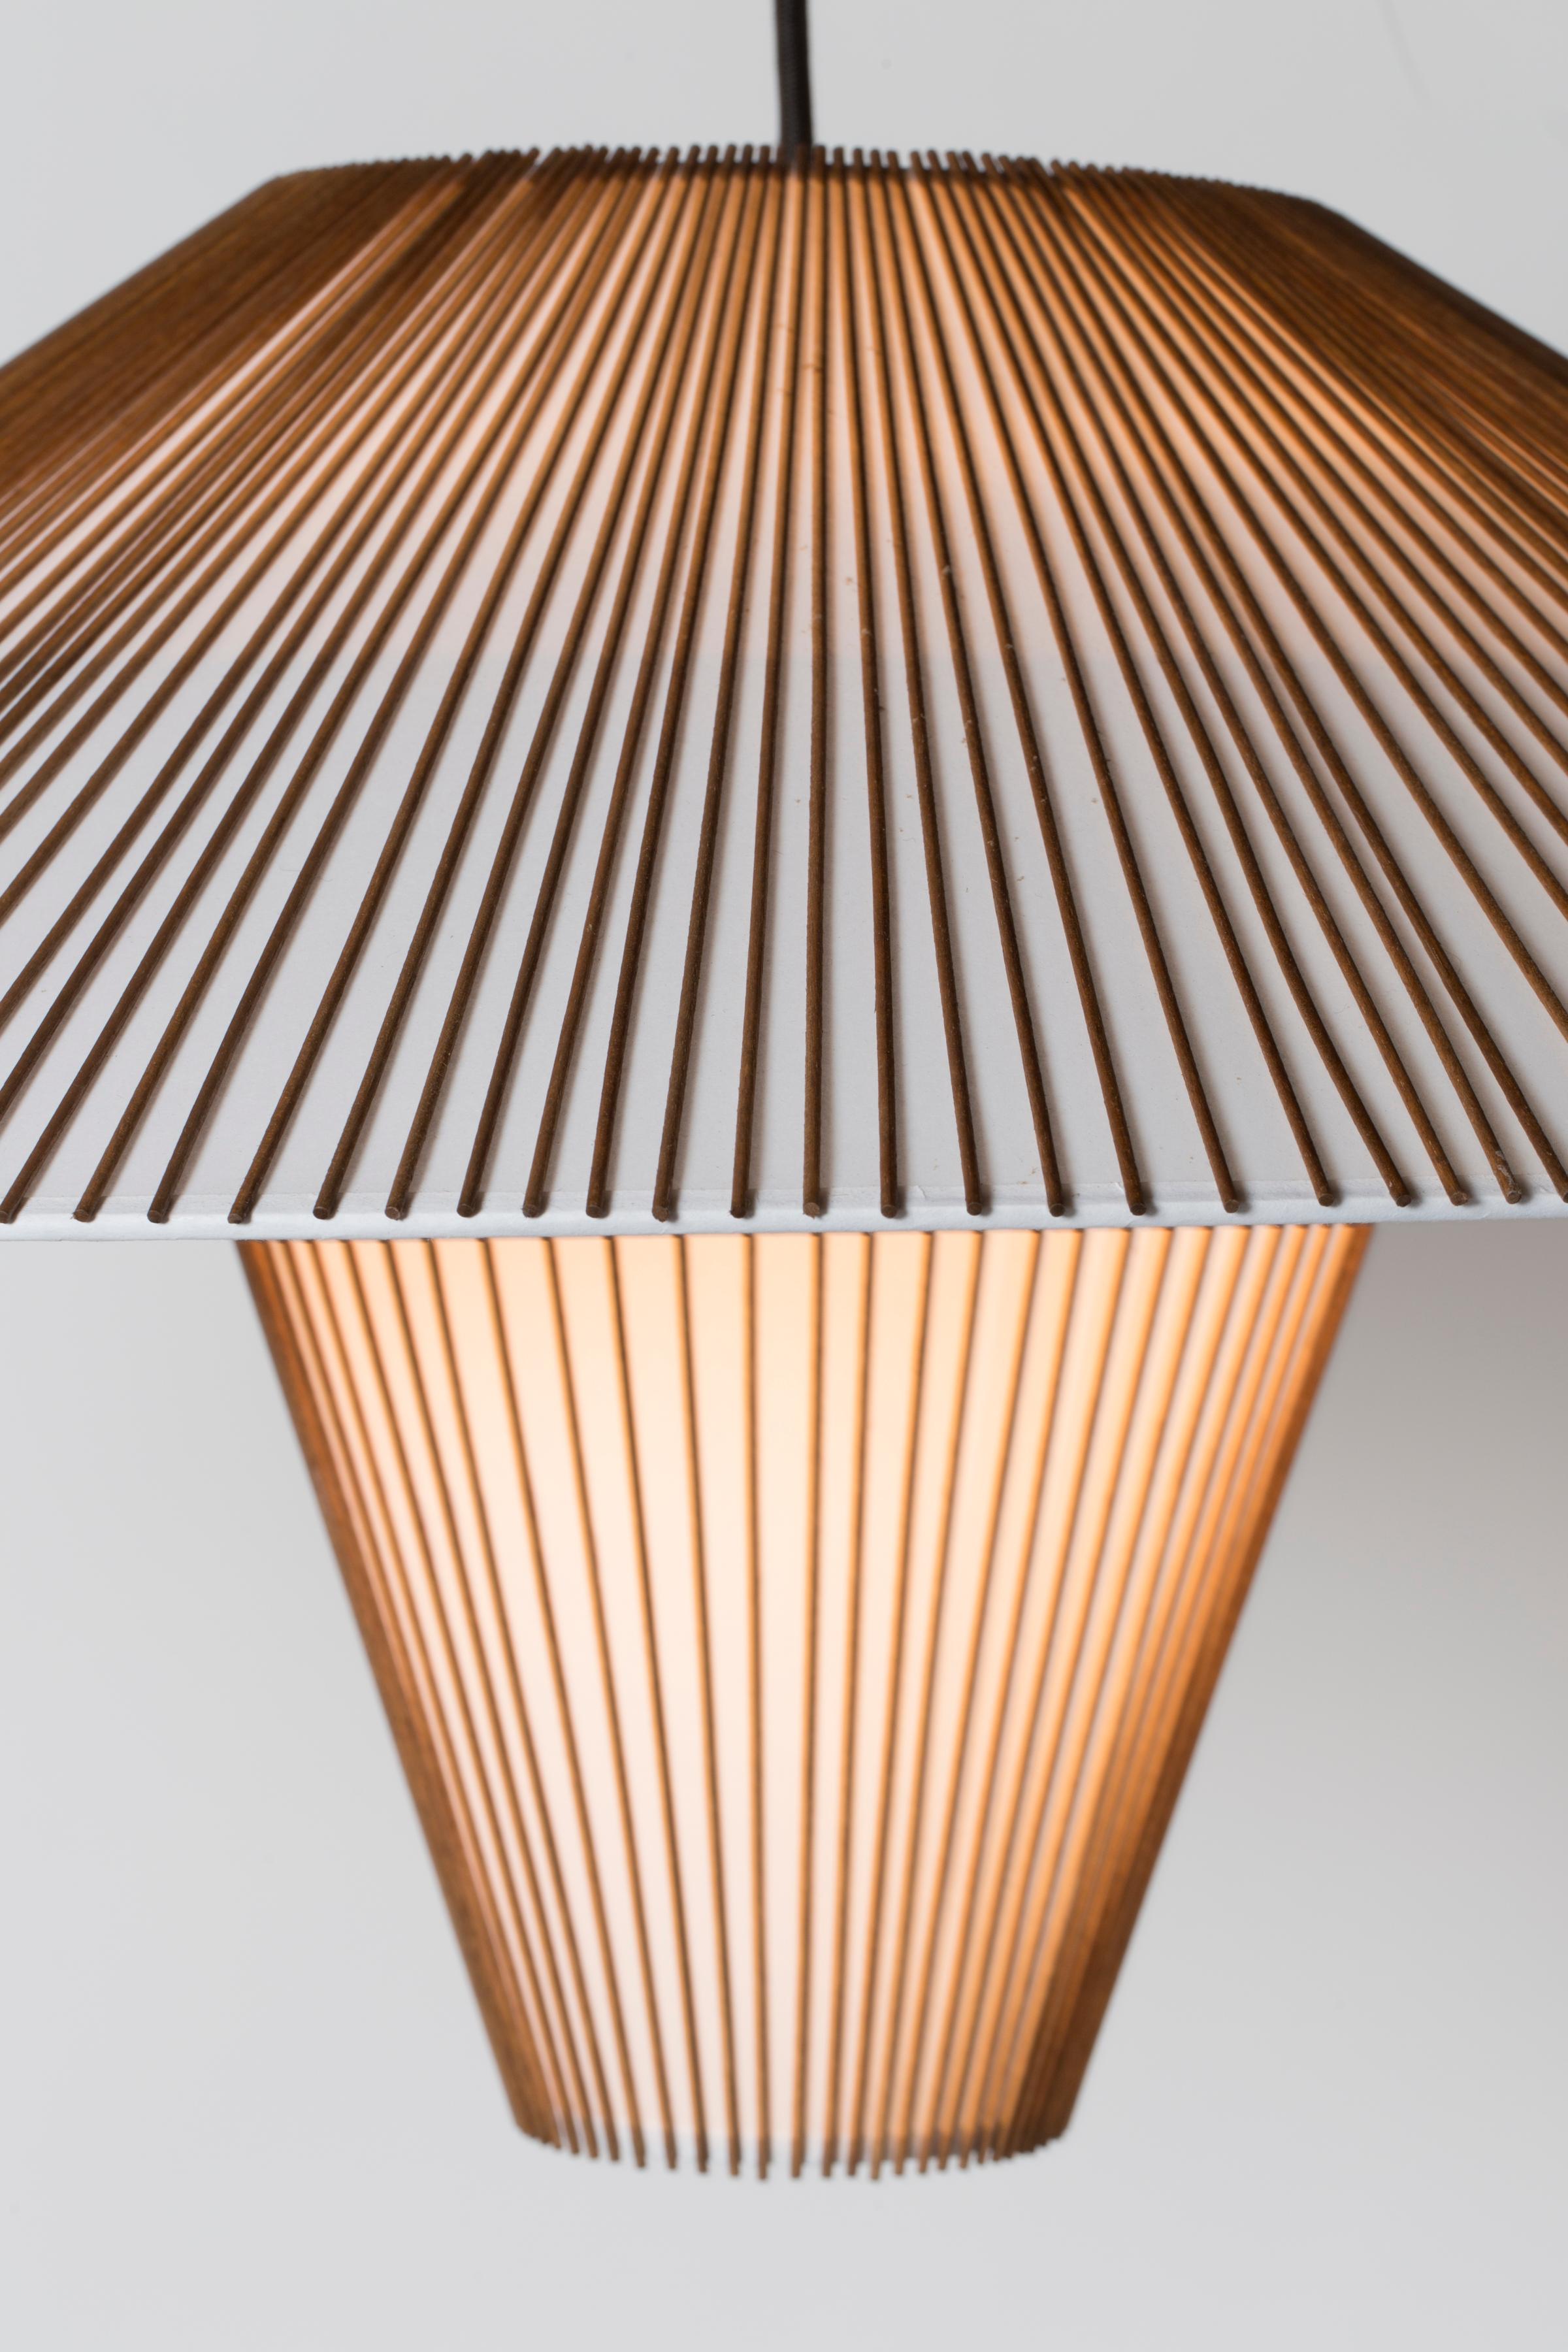 Die Large Hanging Pendelleuchte ist Teil der neu aufgelegten Smilow Lighting Collection, die ursprünglich von Mel Smilow im Jahr 1956 entworfen und 2017 von seiner Tochter Judy Smilow offiziell wieder eingeführt wurde. Die skulpturalen und von der